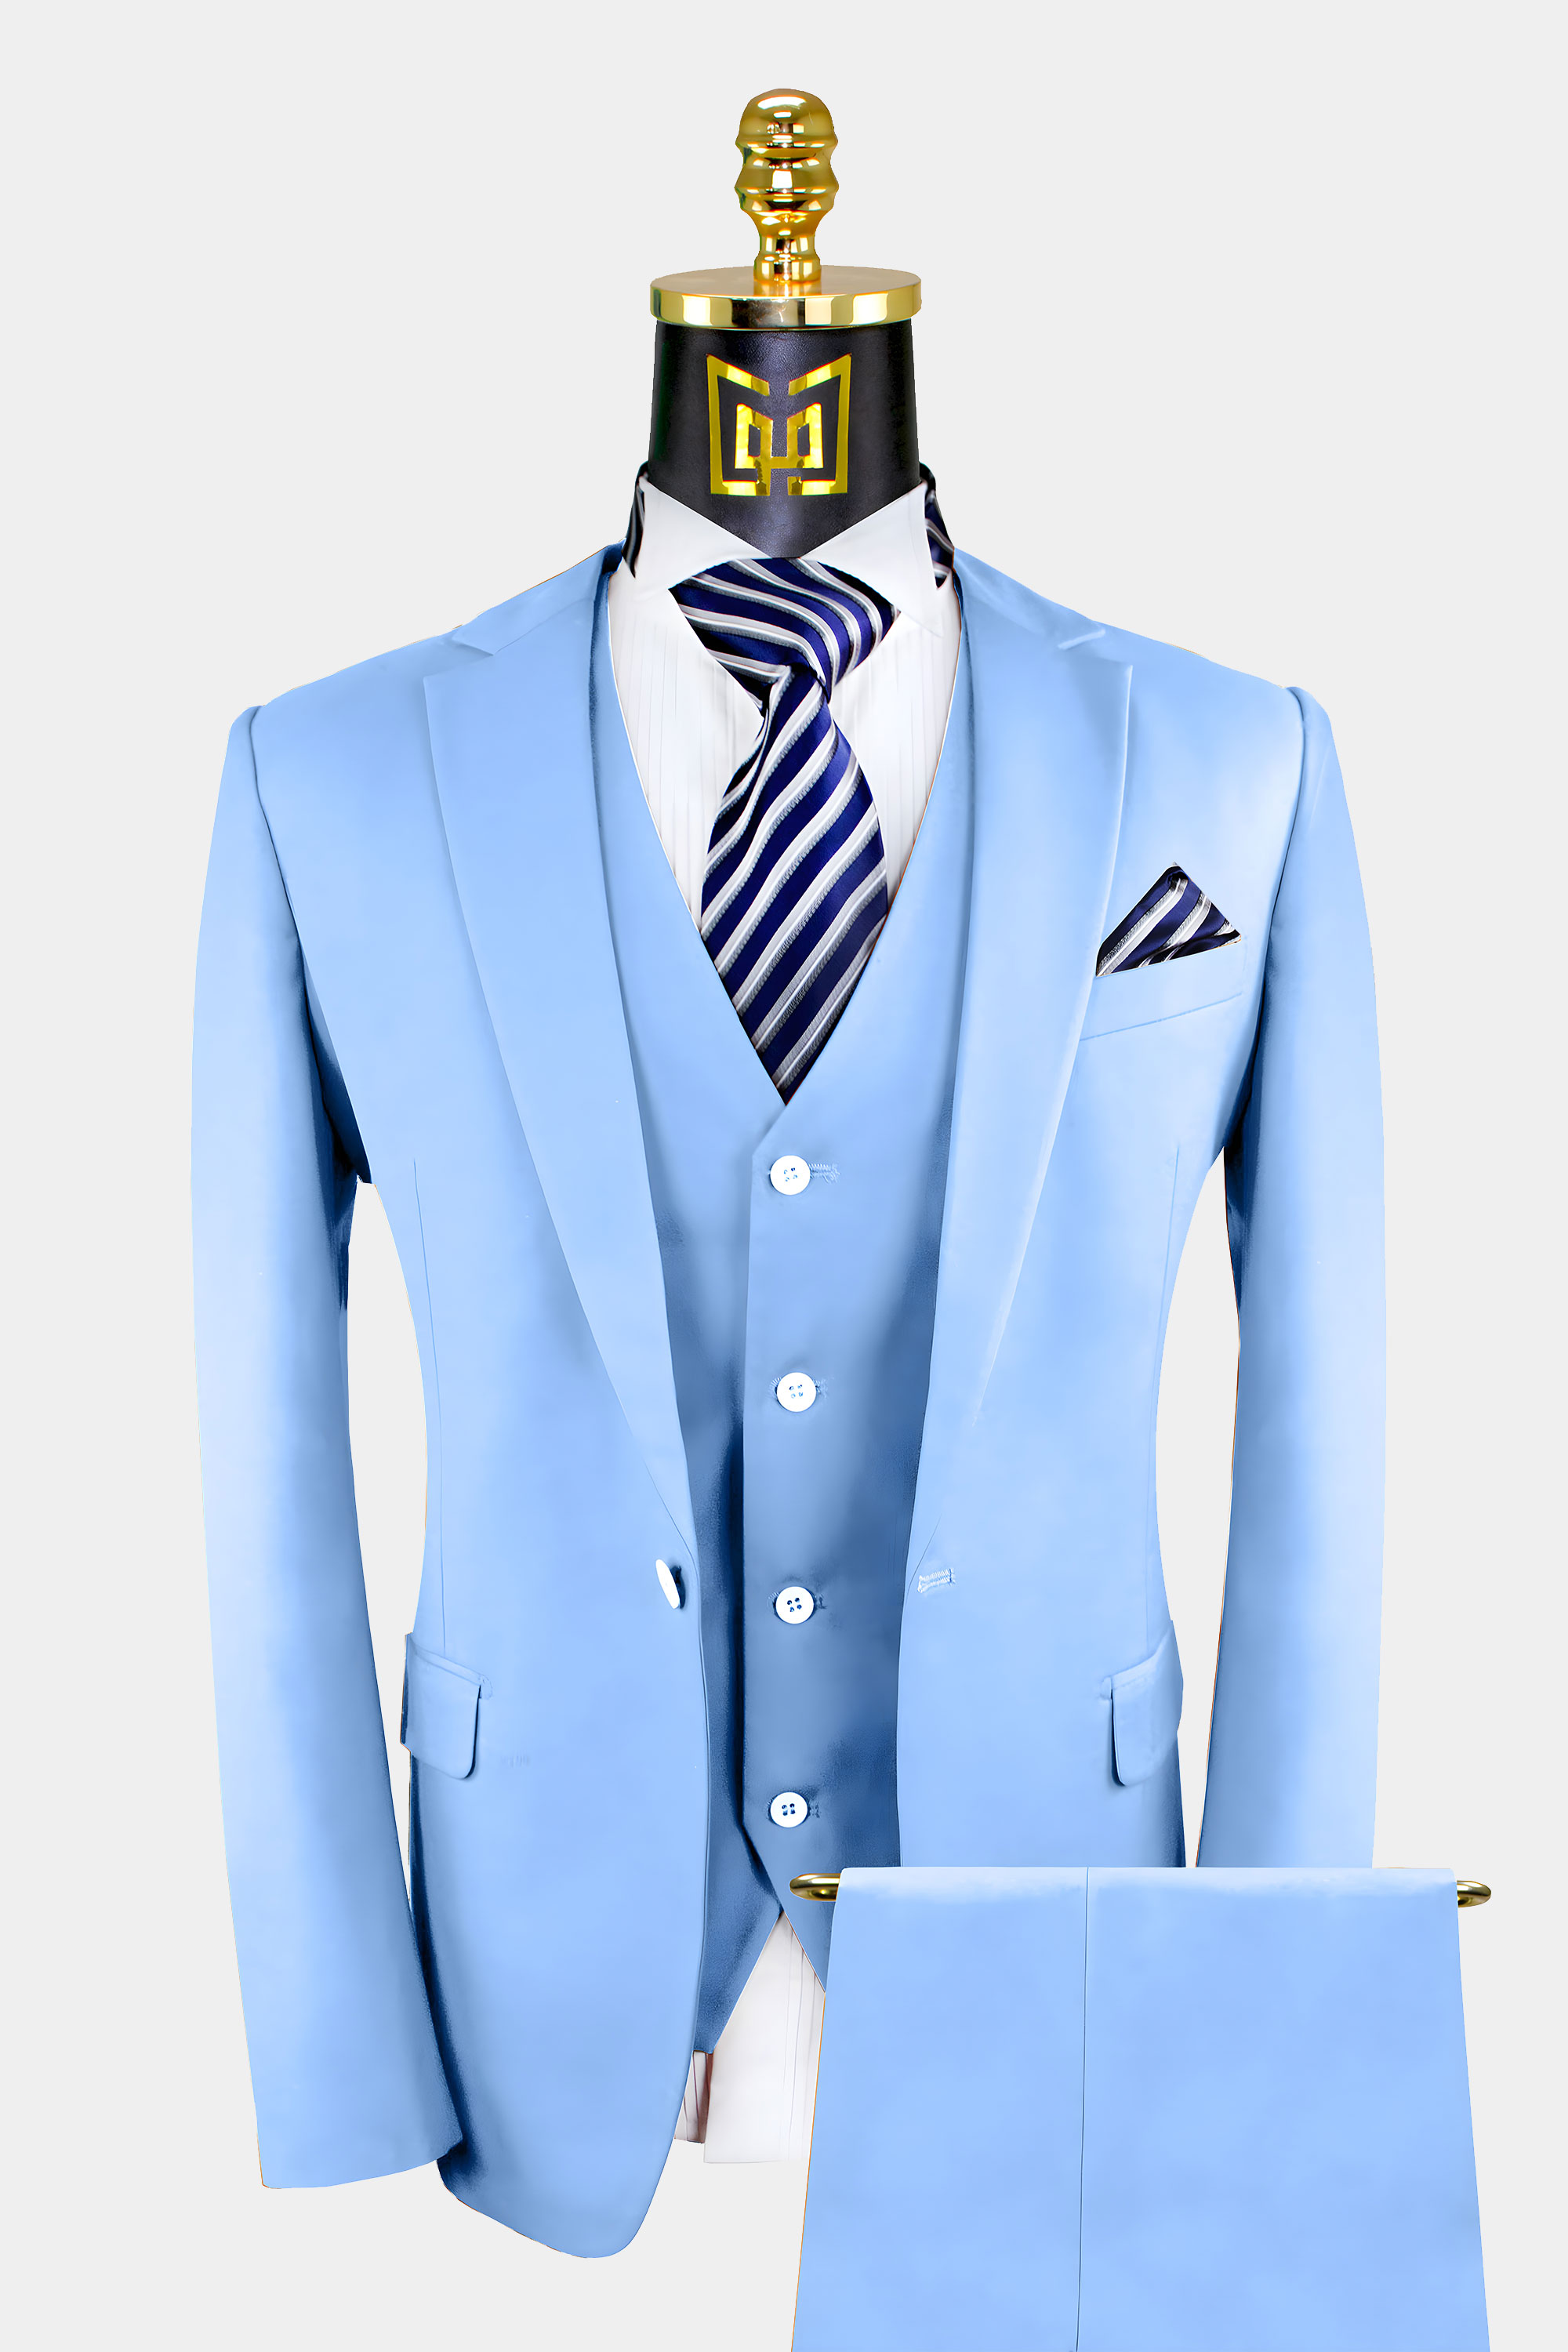 Men's Sky Blue Suit - 3 Piece | Gentleman's Guru